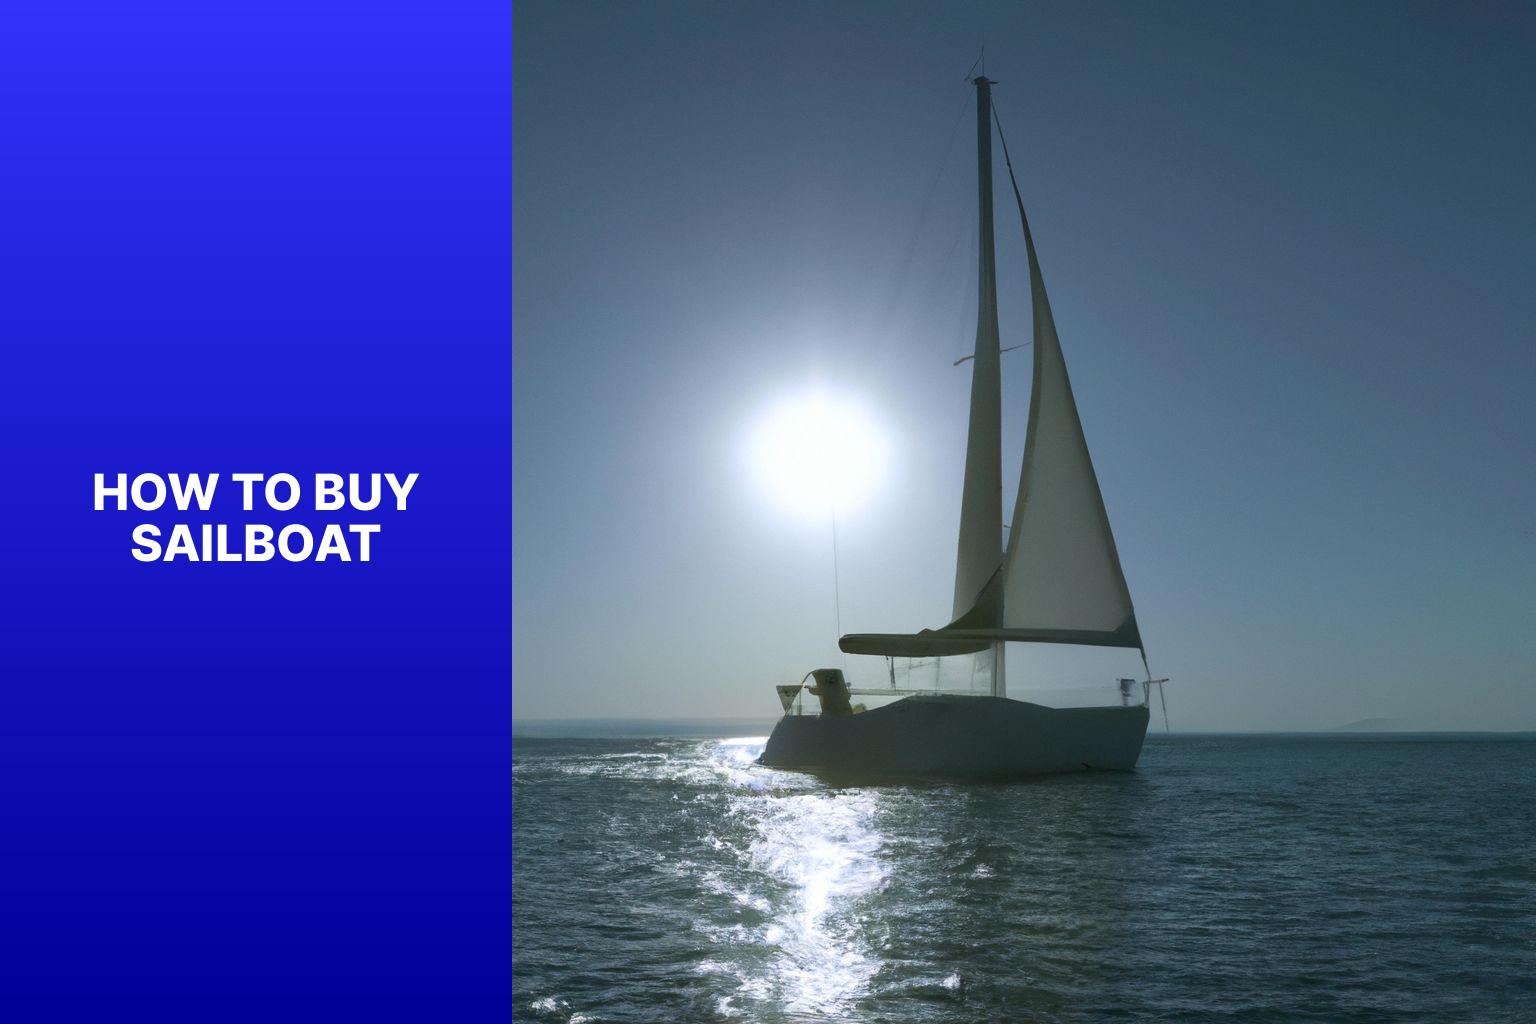 sailboat price range